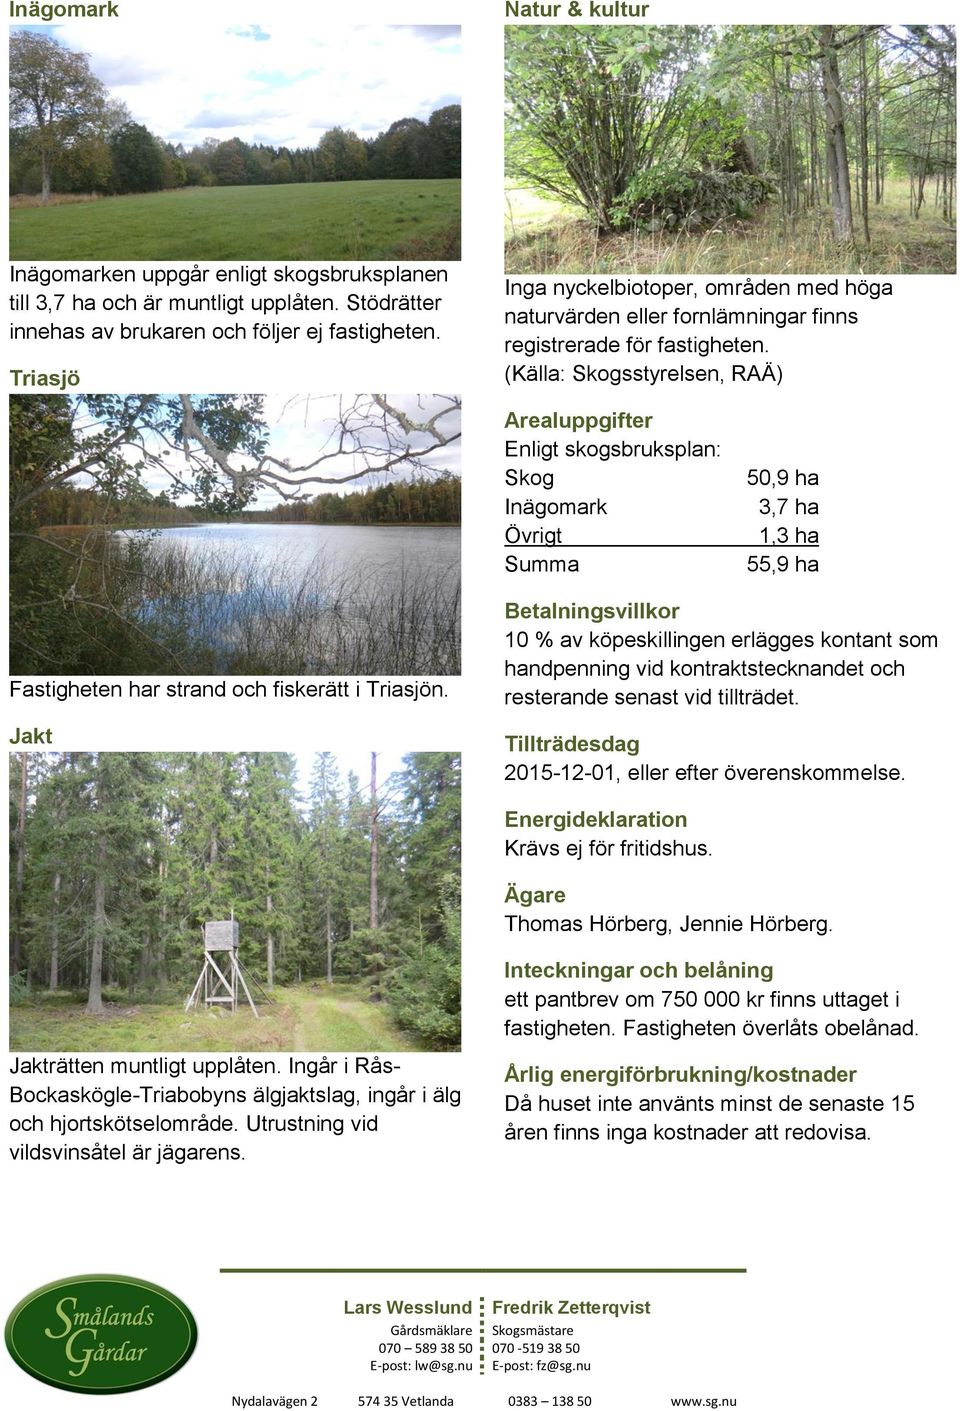 (Källa: Skogsstyrelsen, RAÄ) Arealuppgifter Enligt skogsbruksplan: Skog Inägomark Övrigt Summa 50,9 ha 3,7 ha 1,3 ha 55,9 ha Fastigheten har strand och fiskerätt i Triasjön.